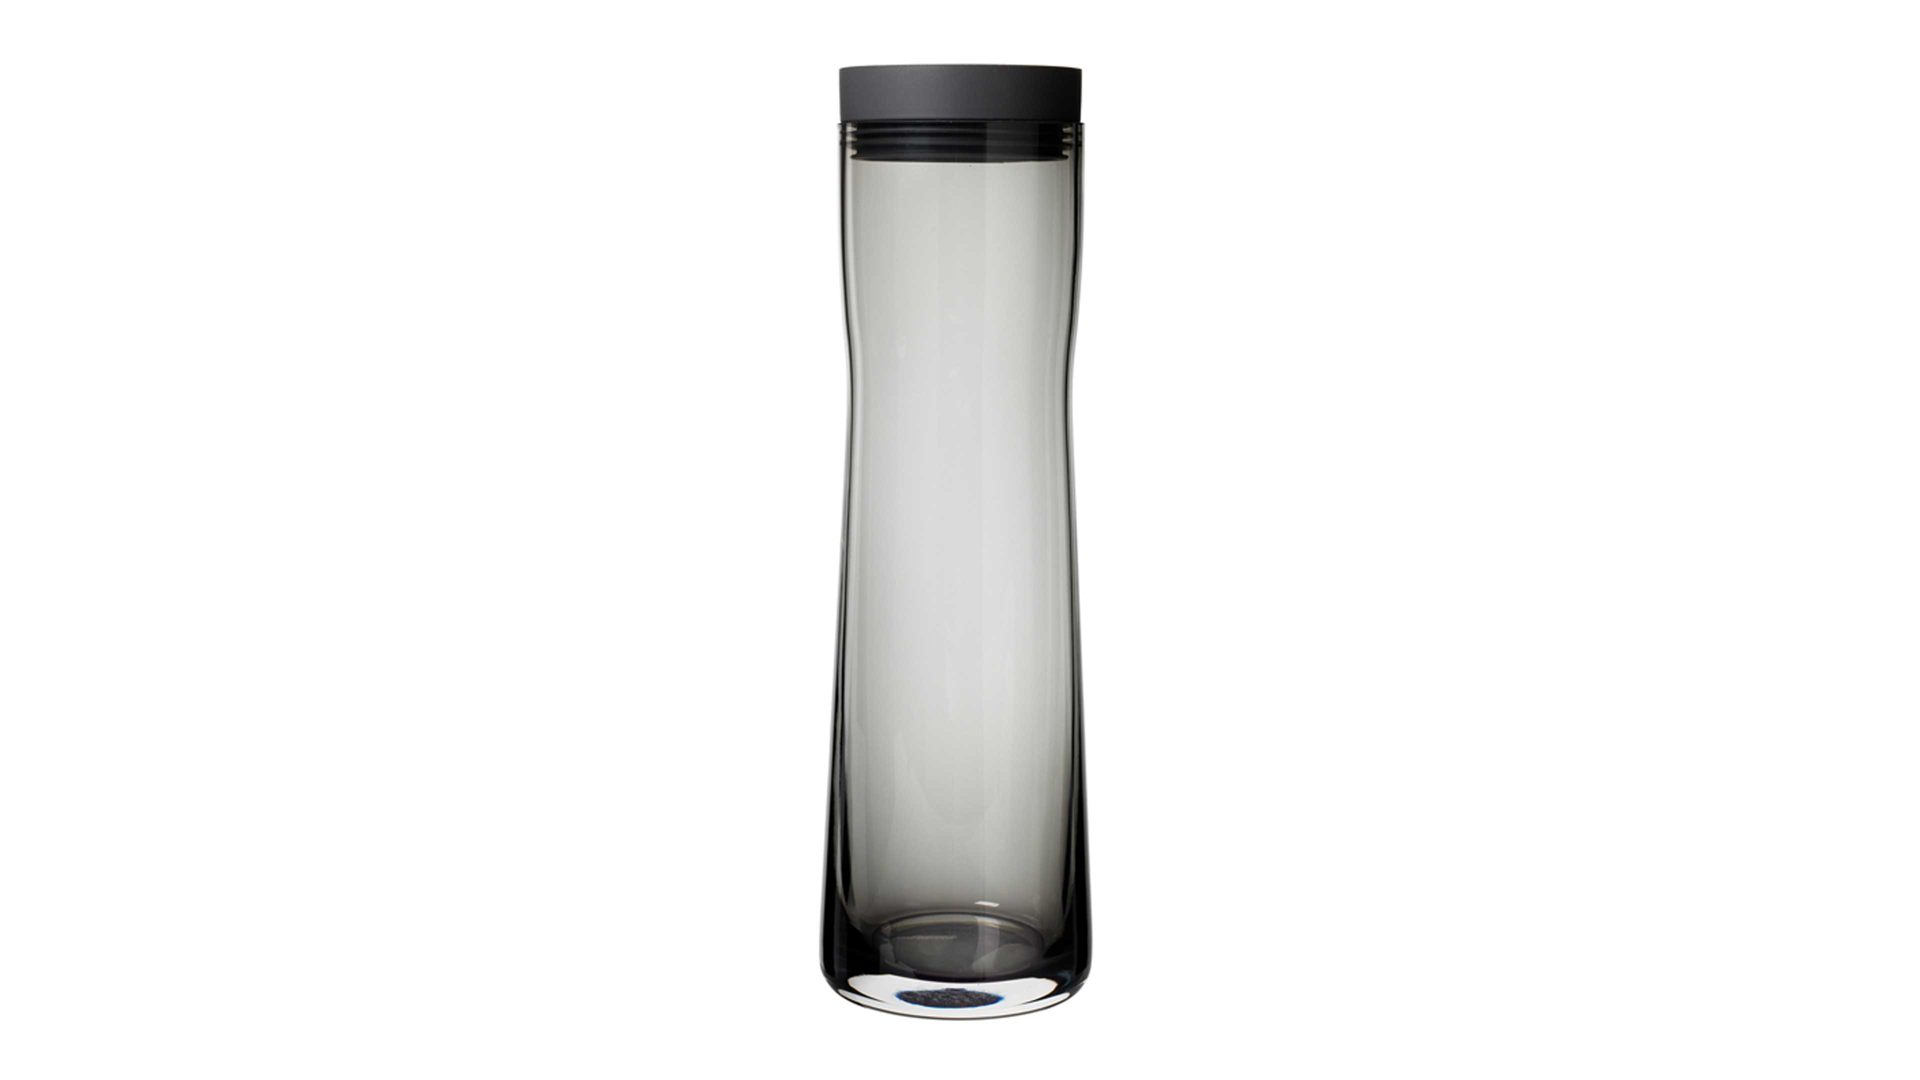 Karaffe Blomus aus Glas in Schwarz blomus Wasserkaraffe Splash schwarzes Silikon & Glas, Edelstahl – ca. 1000 ml